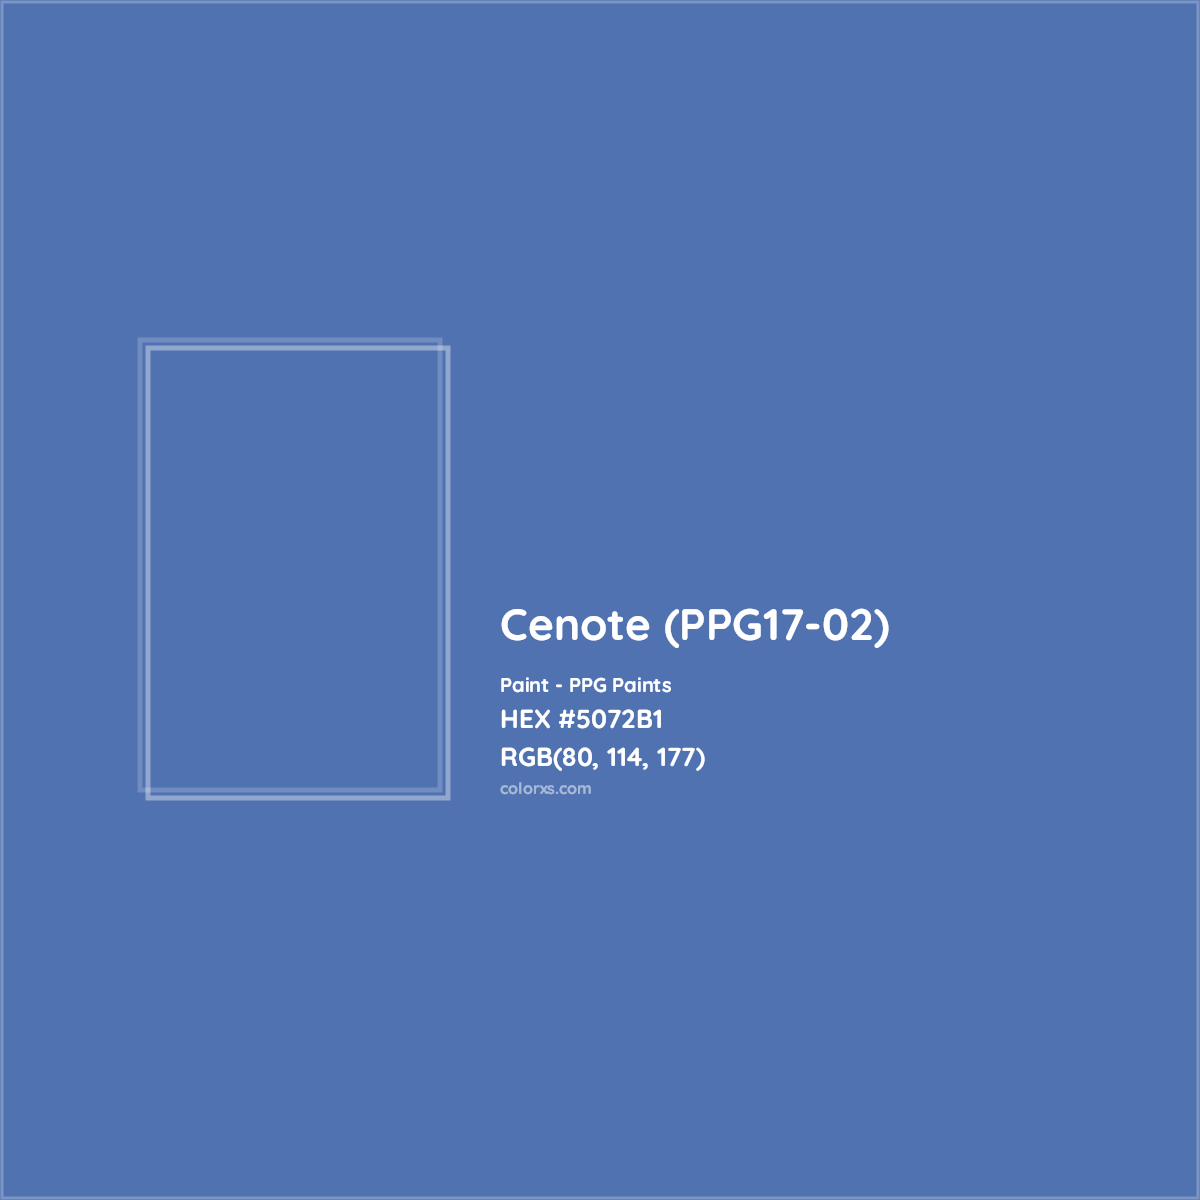 HEX #5072B1 Cenote (PPG17-02) Paint PPG Paints - Color Code